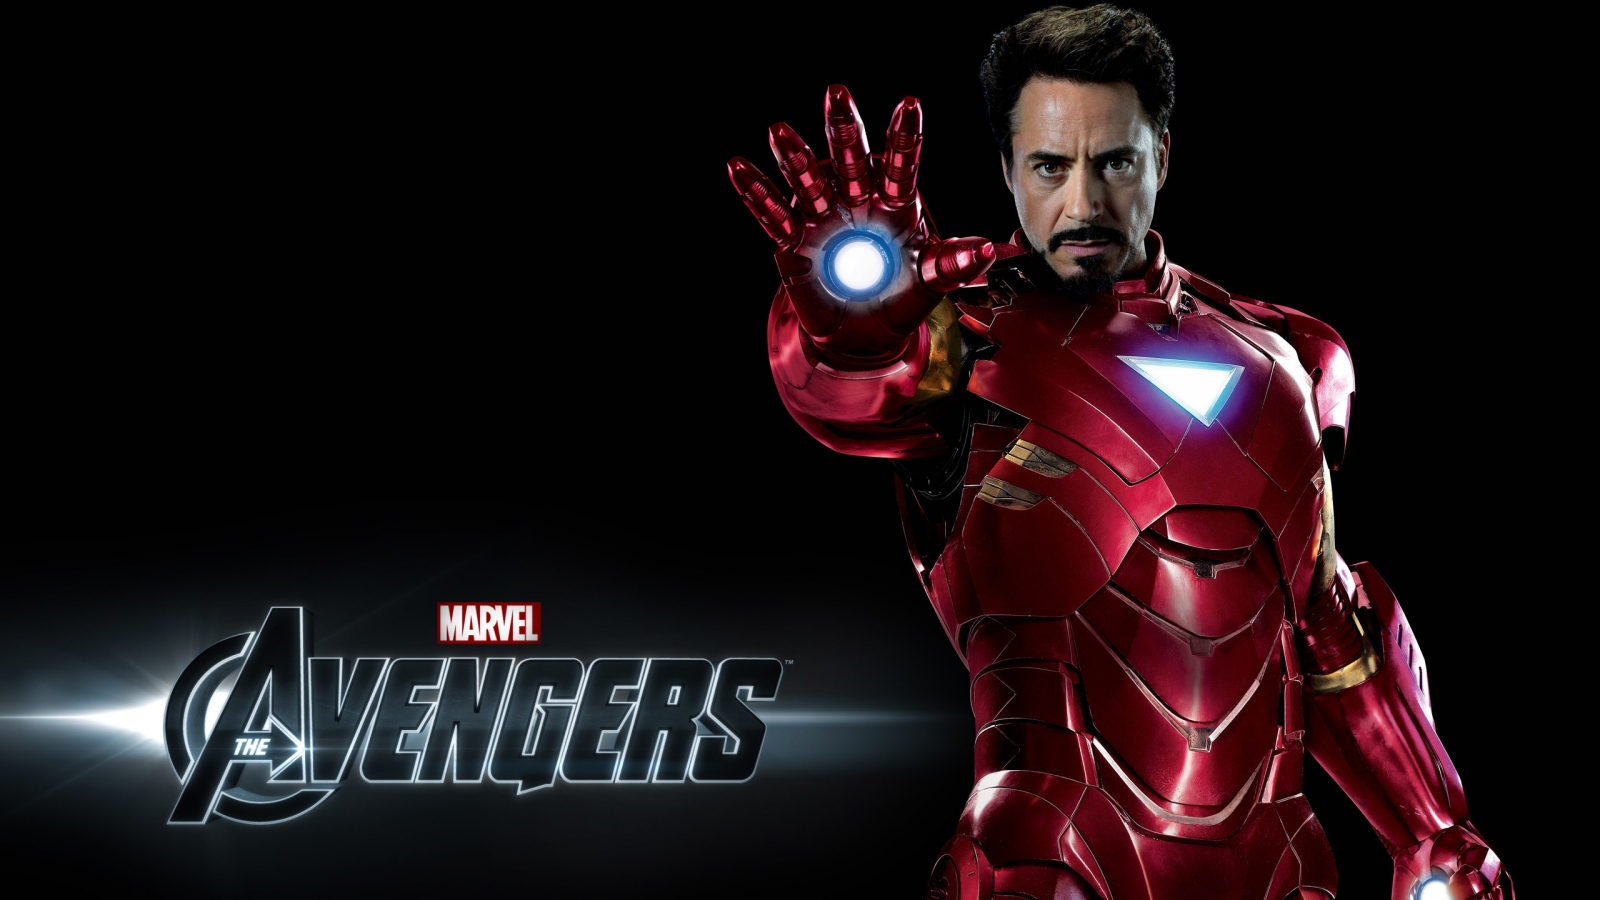 Avengers Iron Man for 1600 x 900 HDTV resolution